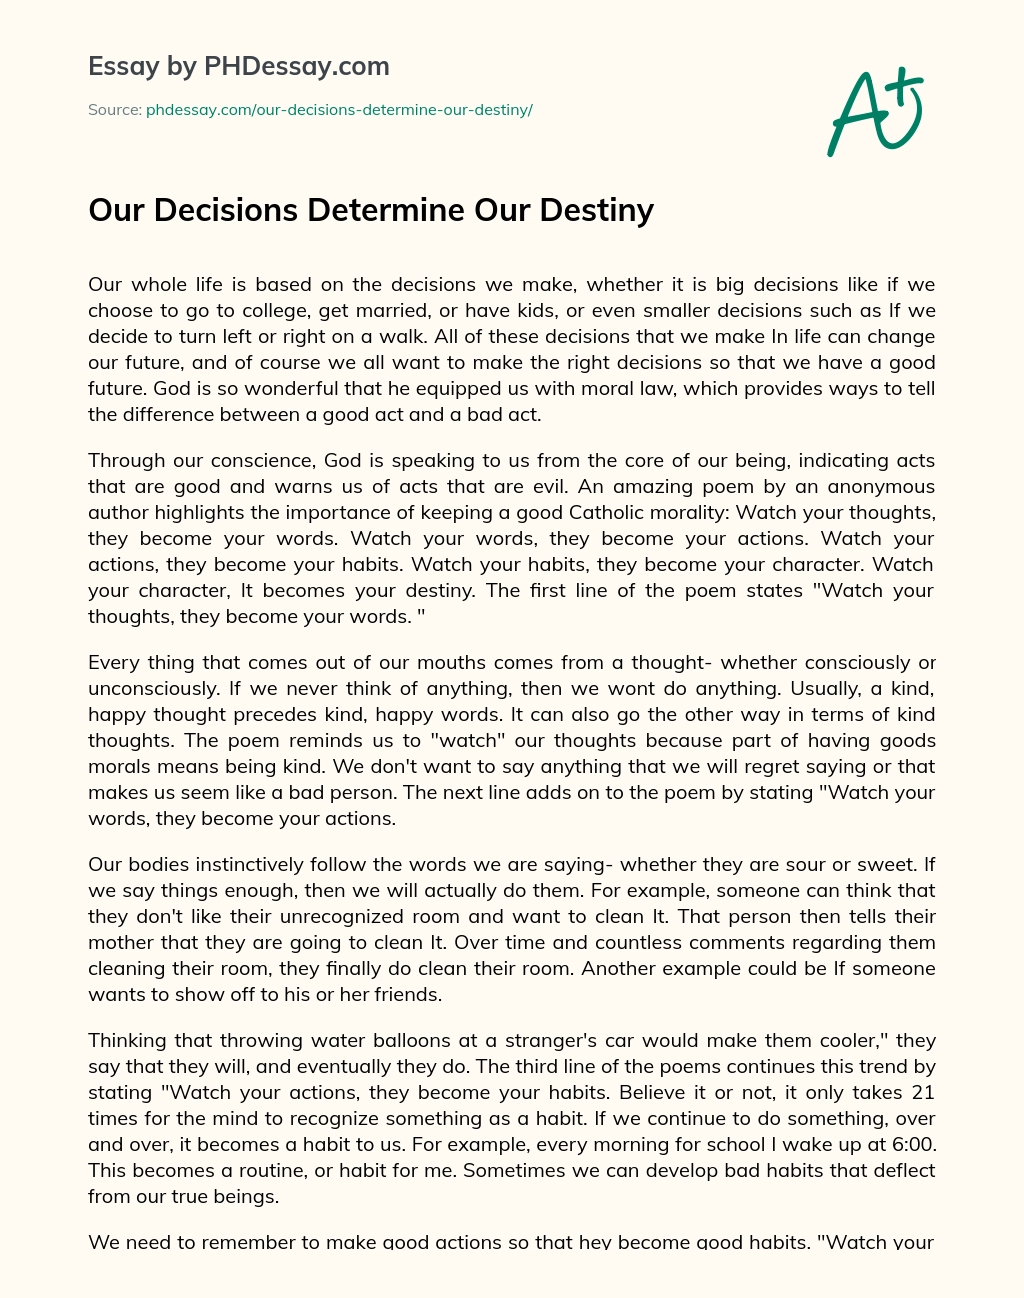 Our Decisions Determine Our Destiny essay